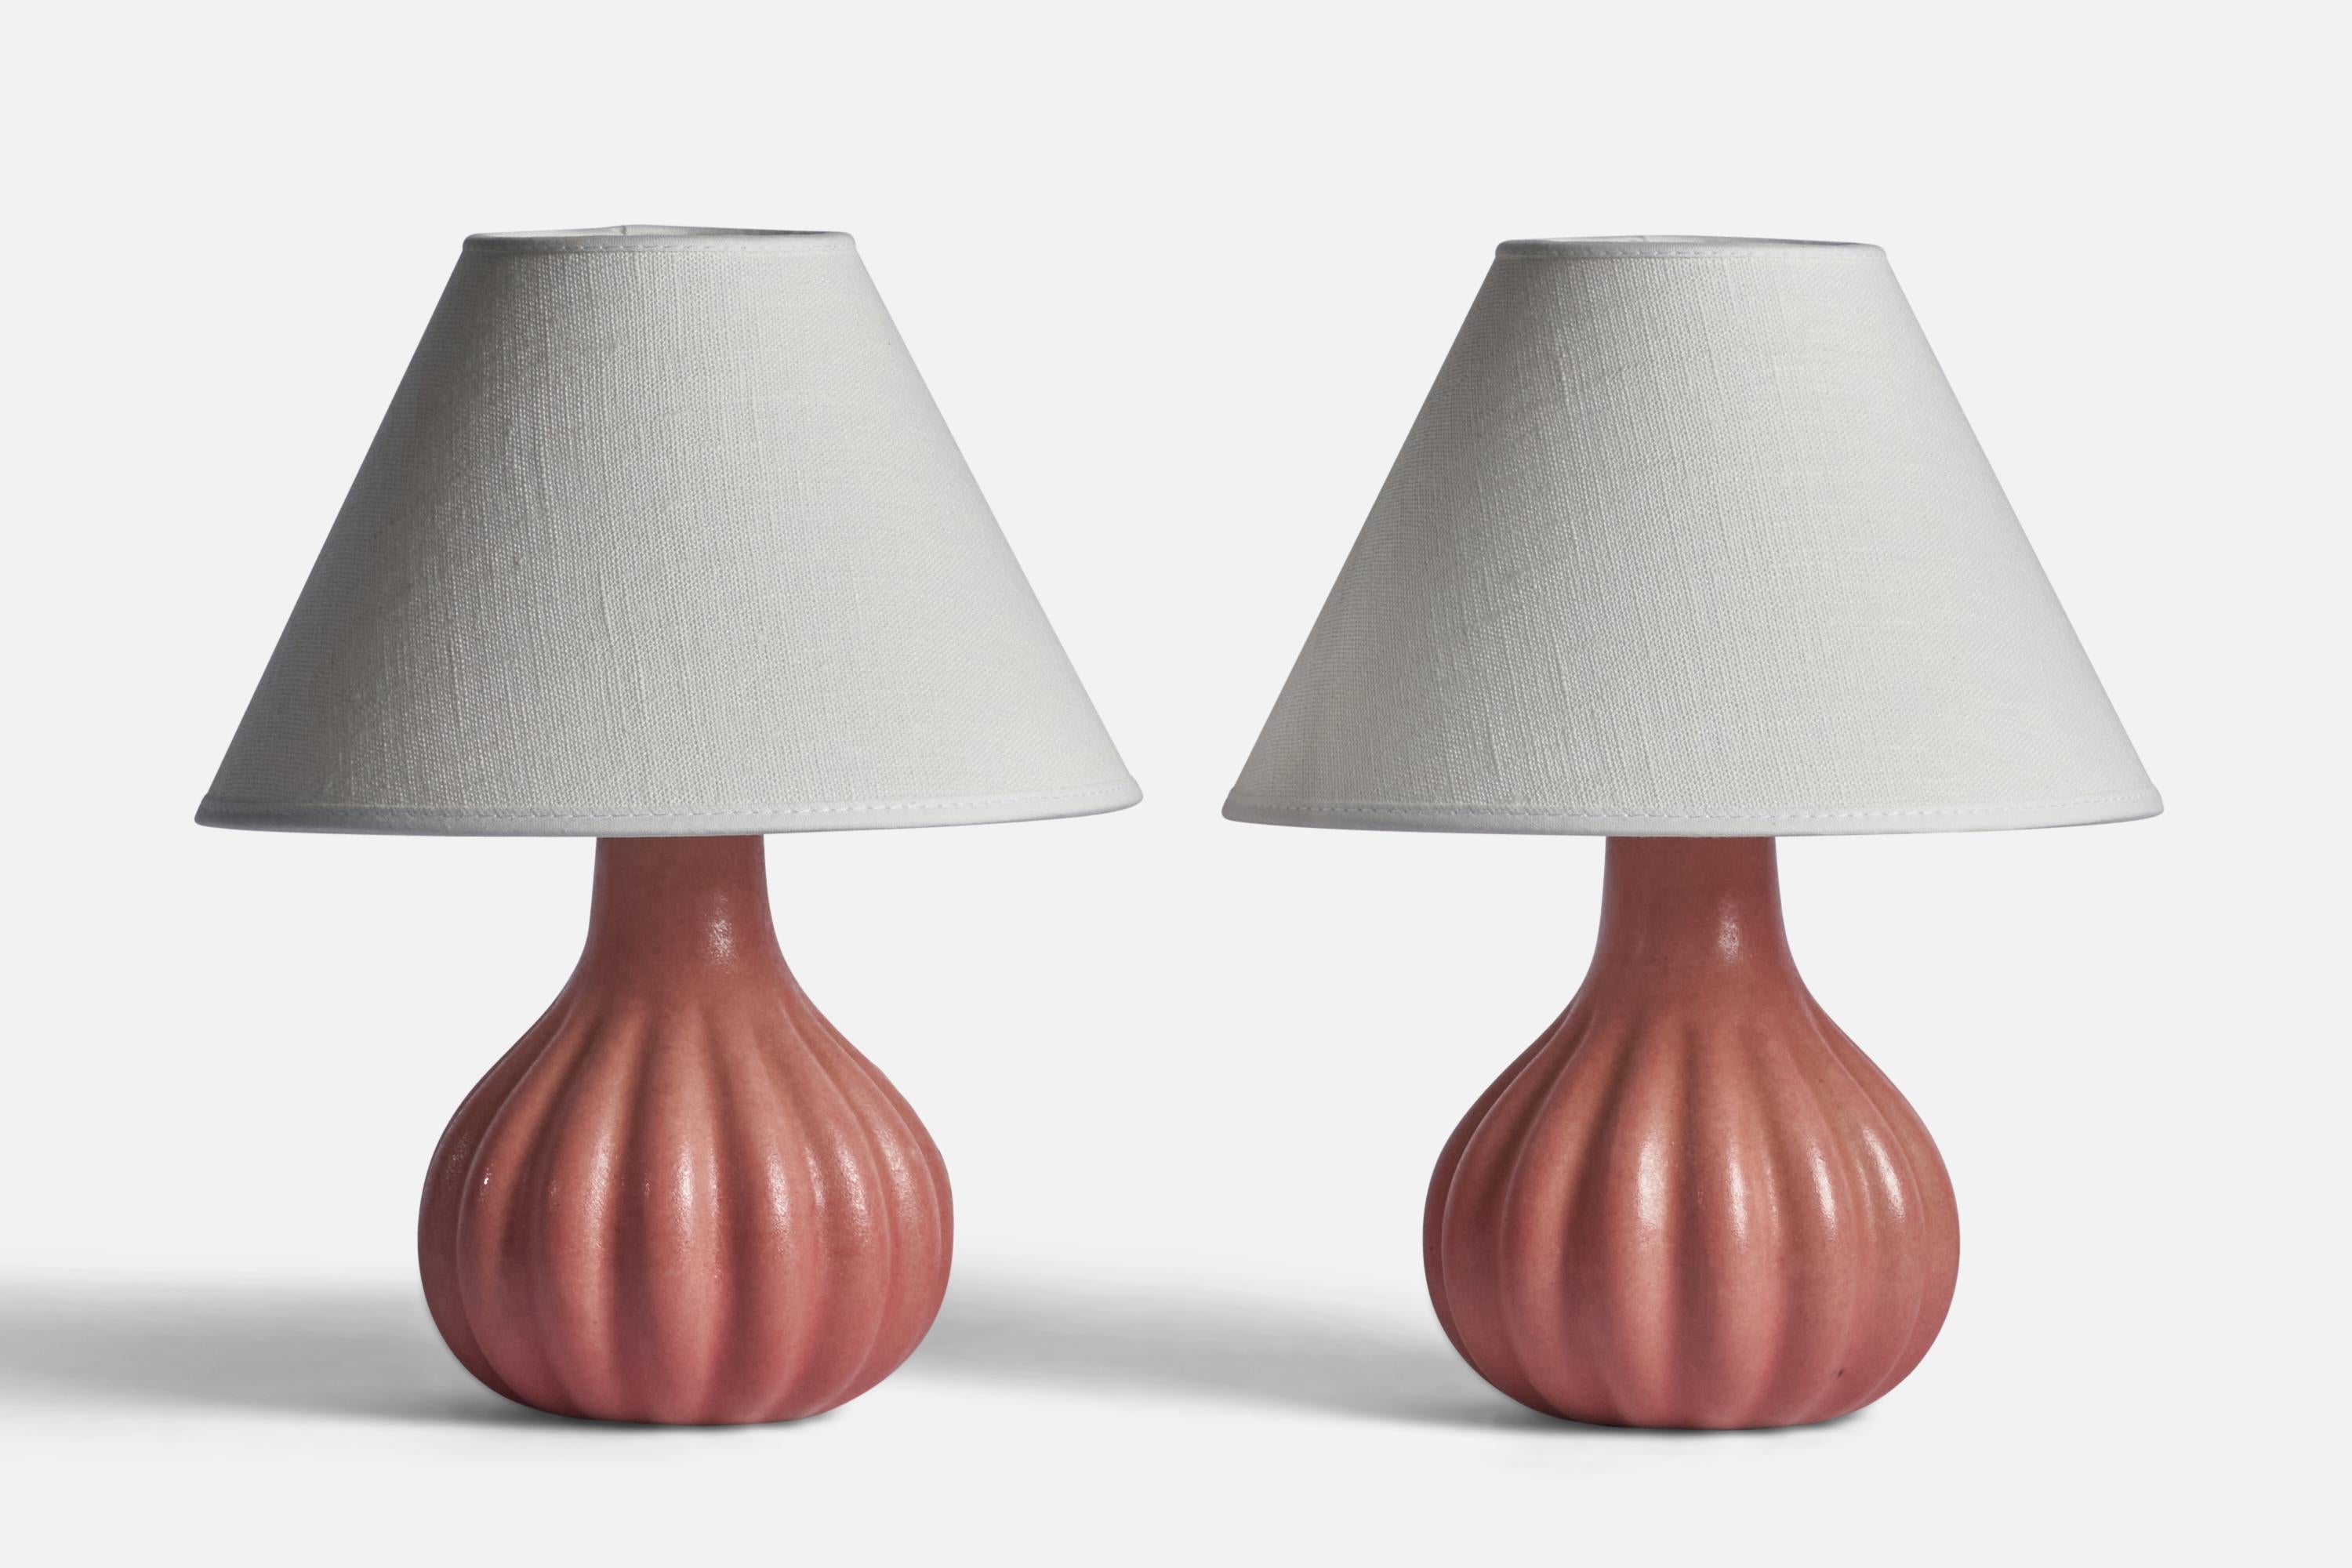 Paire de lampes de table cannelées en grès émaillé rose, conçues et produites par Ego Stengods, Suède, années 1960.

Dimensions de la lampe (pouces) : 7.25